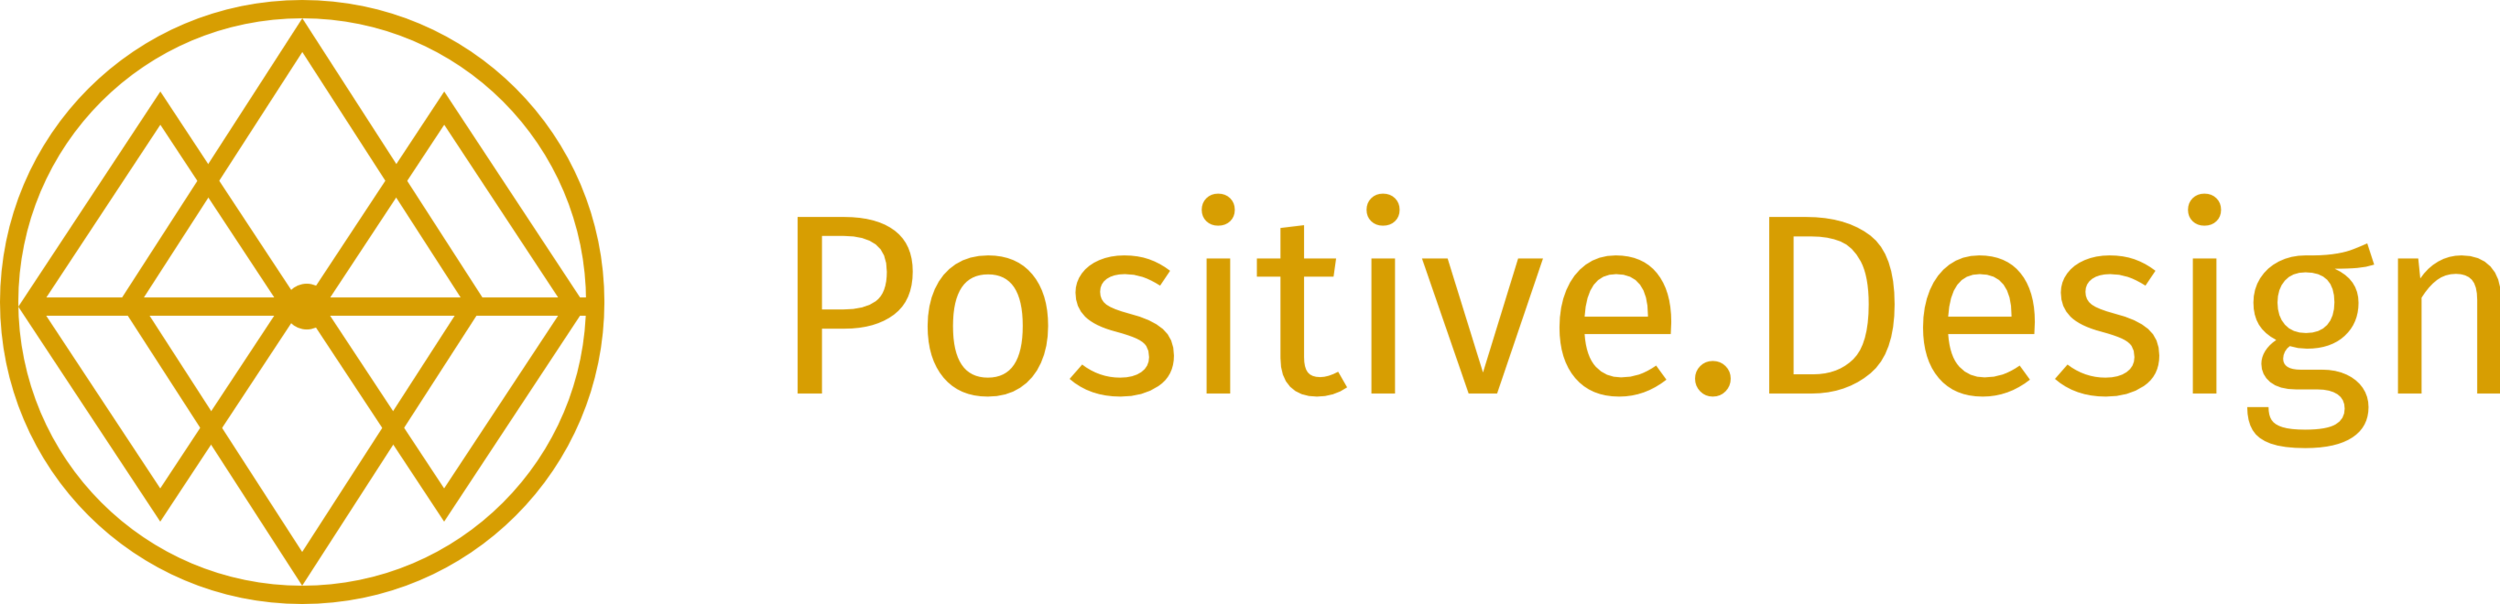 Positive.Design